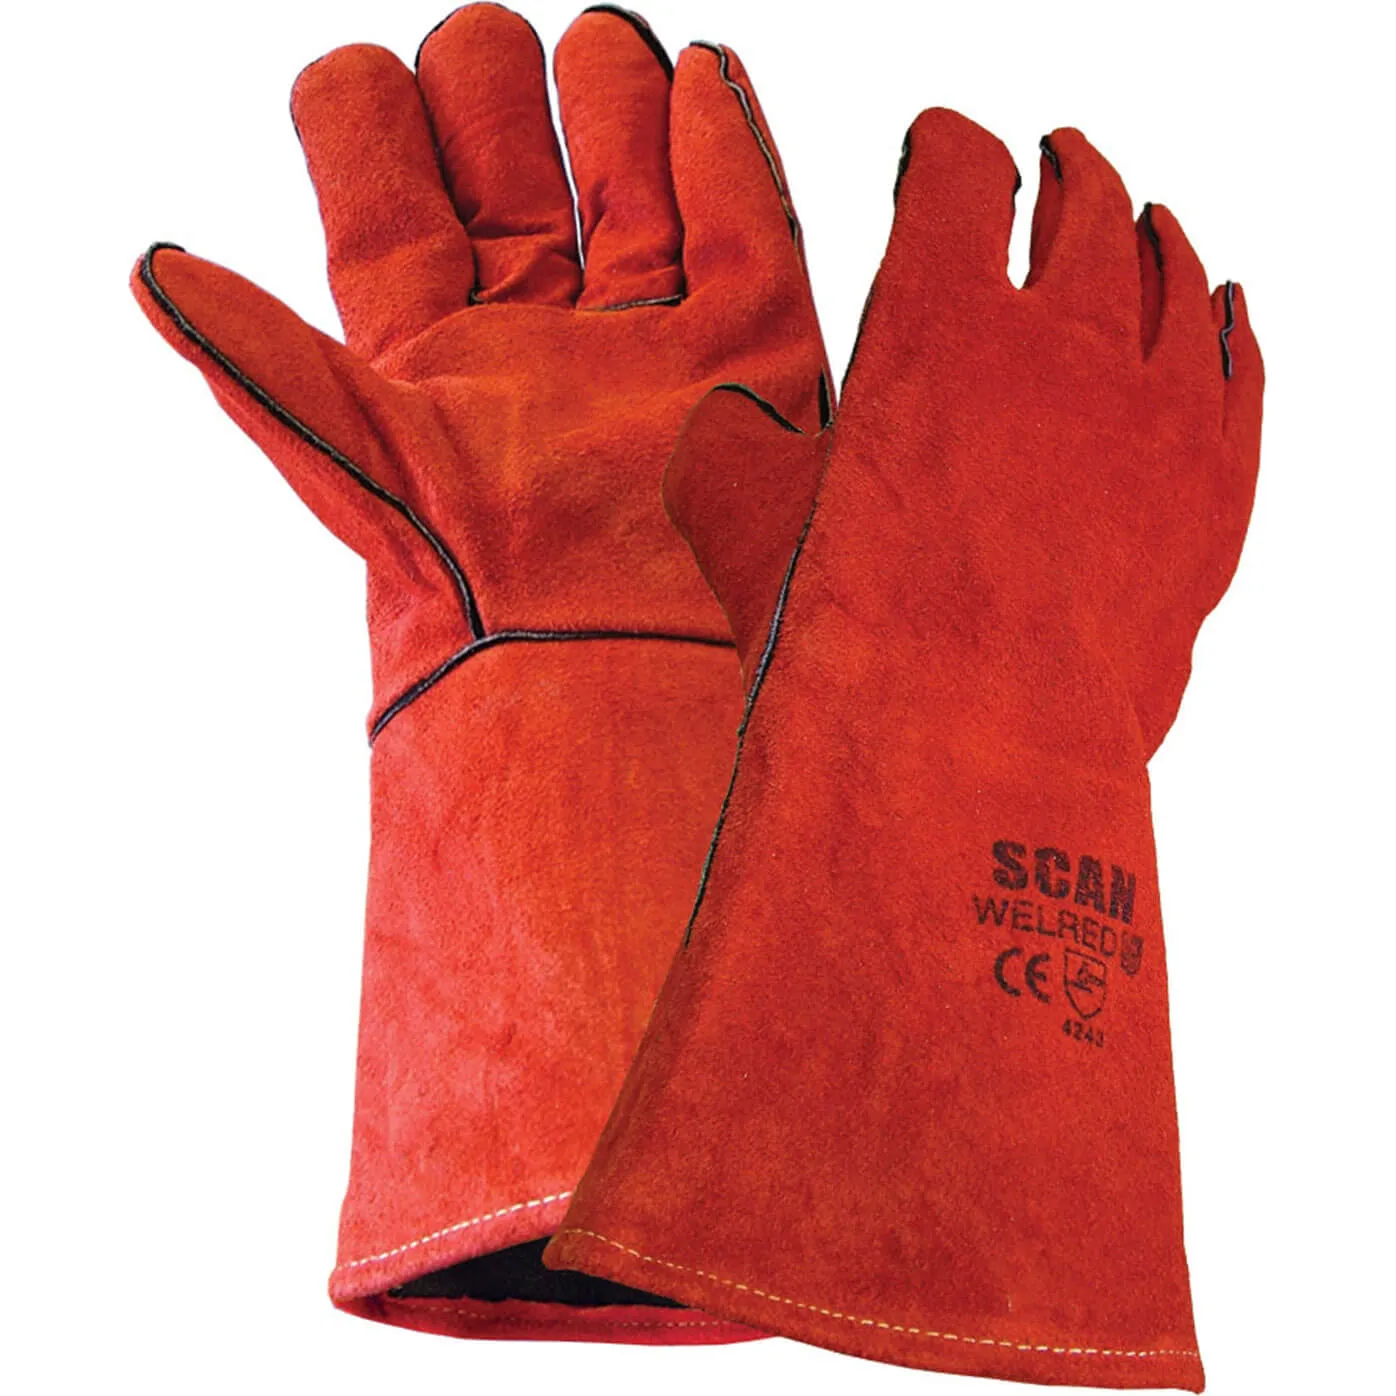 Scan Welders Gauntlet Gloves - XL